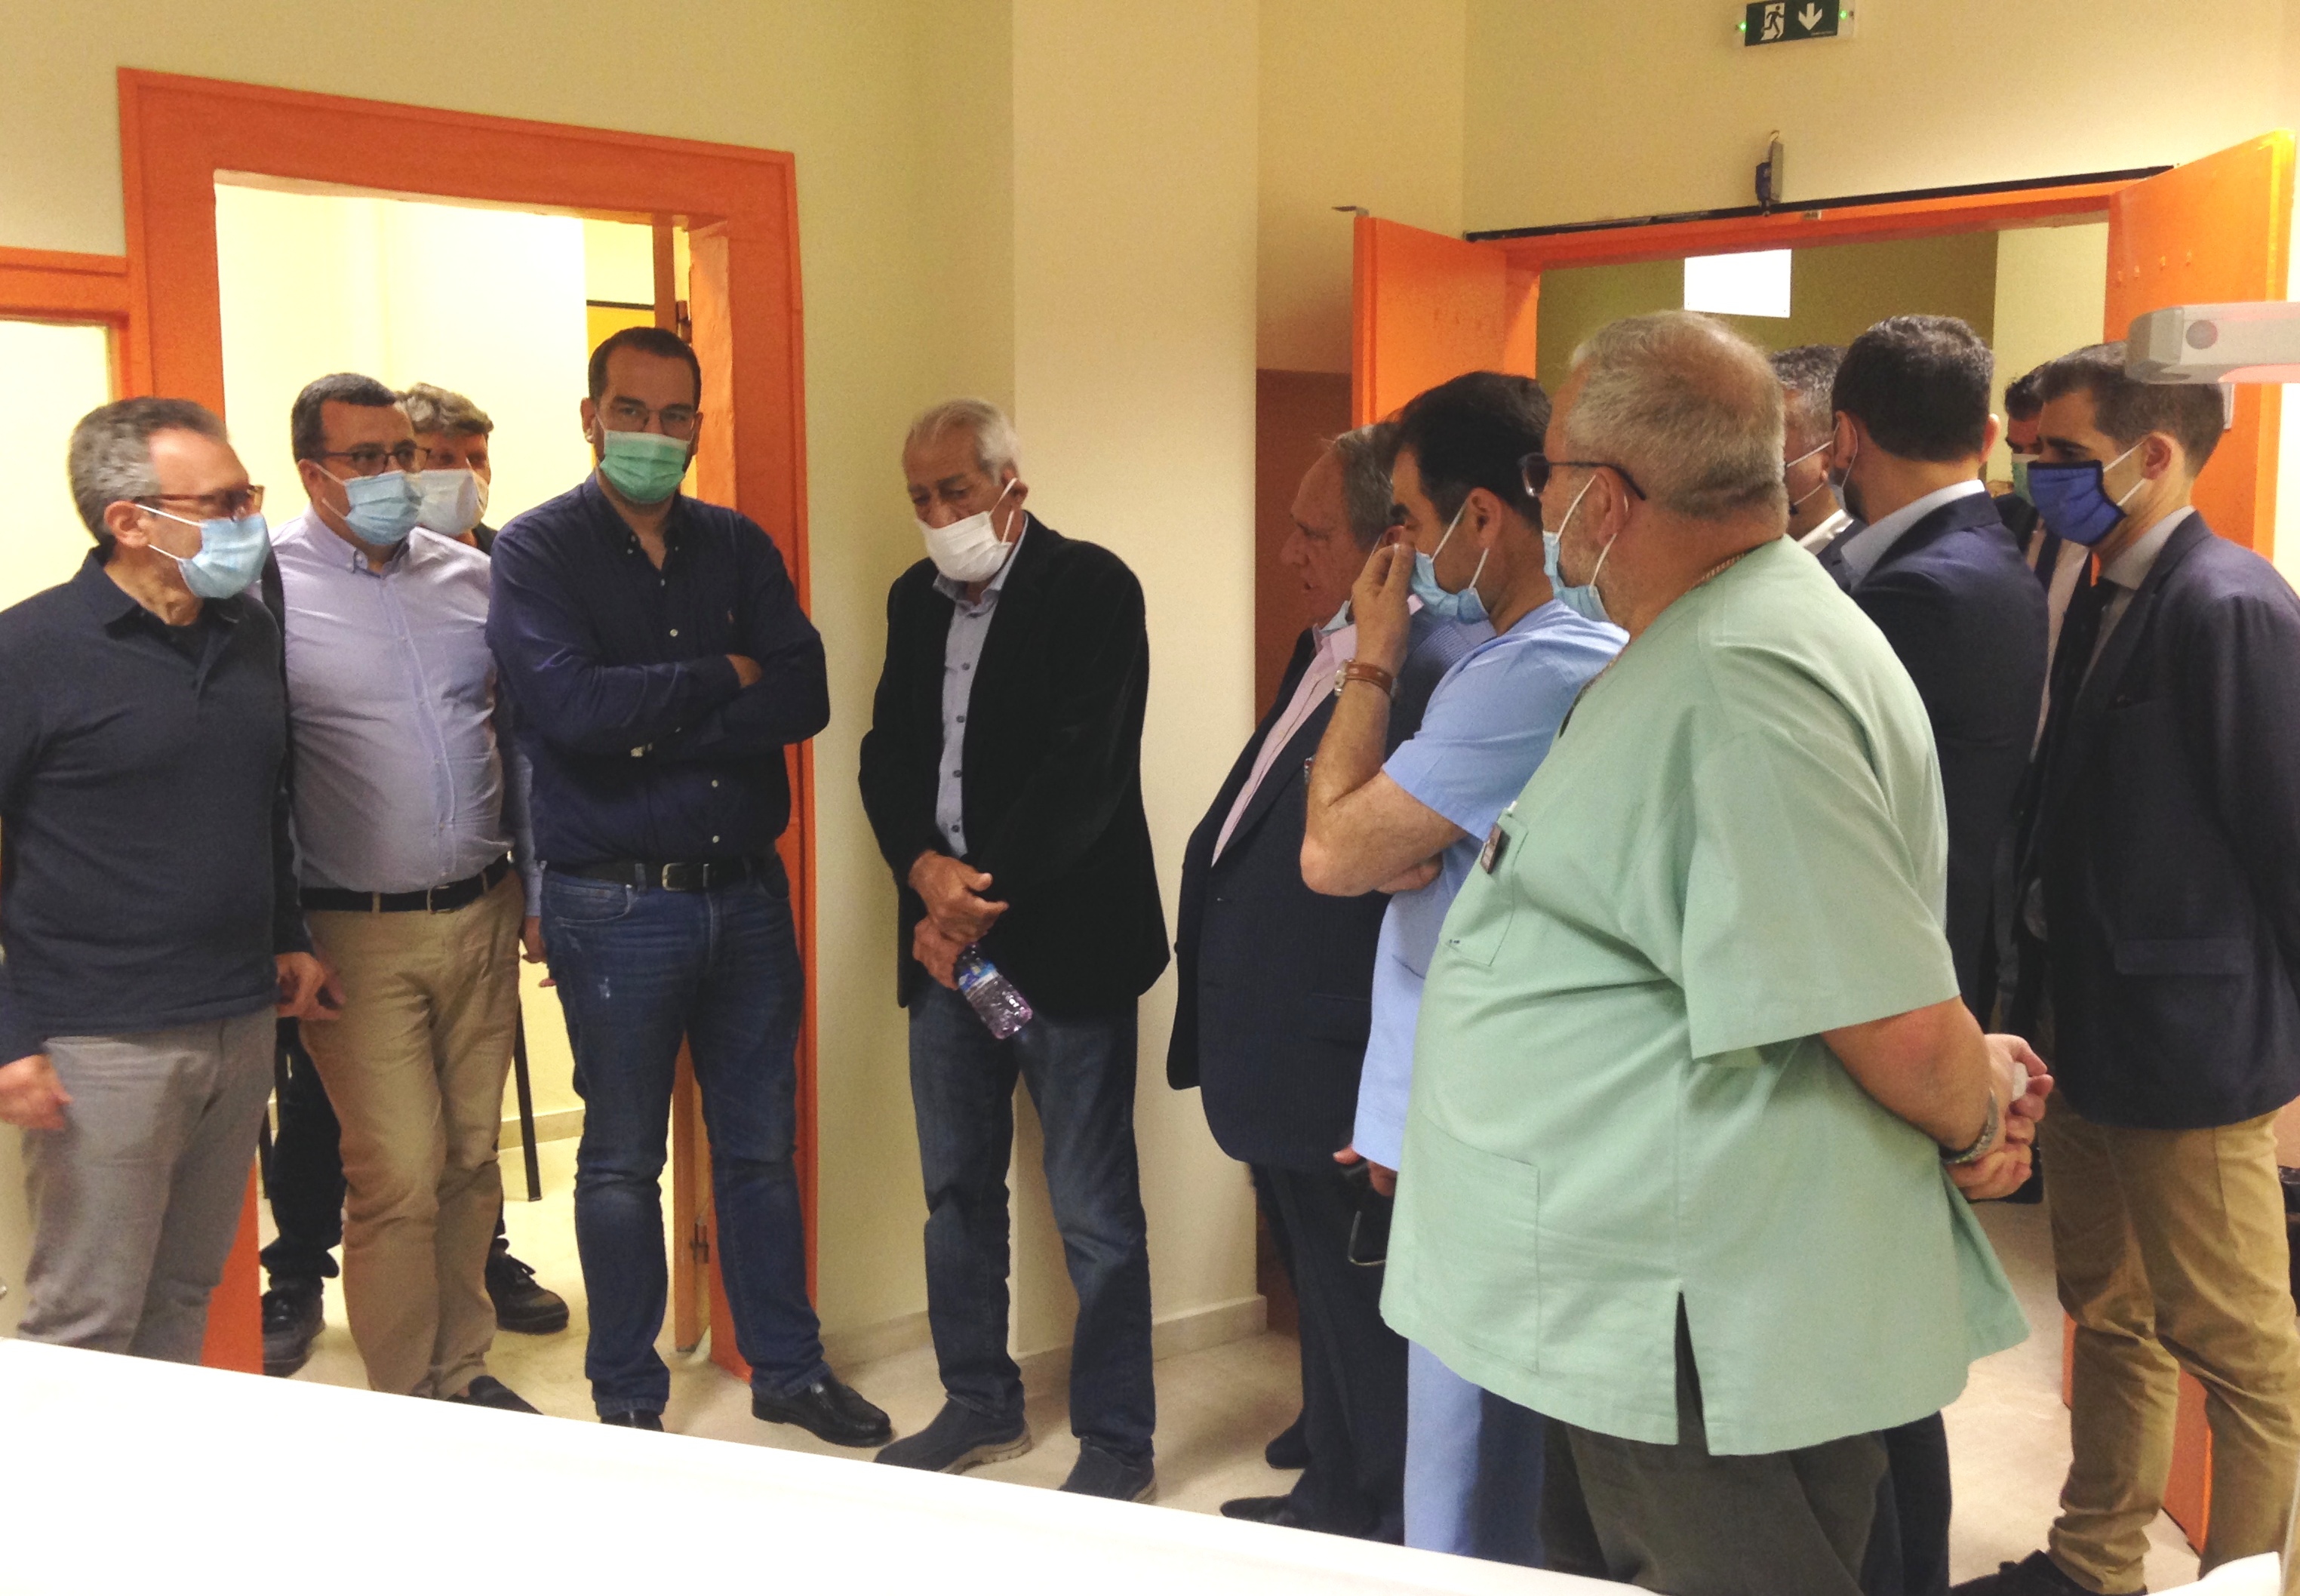 ΠΔΕ: Επίσκεψη του Περιφερειάρχη Ν. Φαρμάκη στα έργα ολοκλήρωσης των ΤΕΠ στο νέο κτίριο στο Νοσοκομείο Αμαλιάδας- «Κάνουμε τις υποσχέσεις πράξεις» δήλωσε (photos)